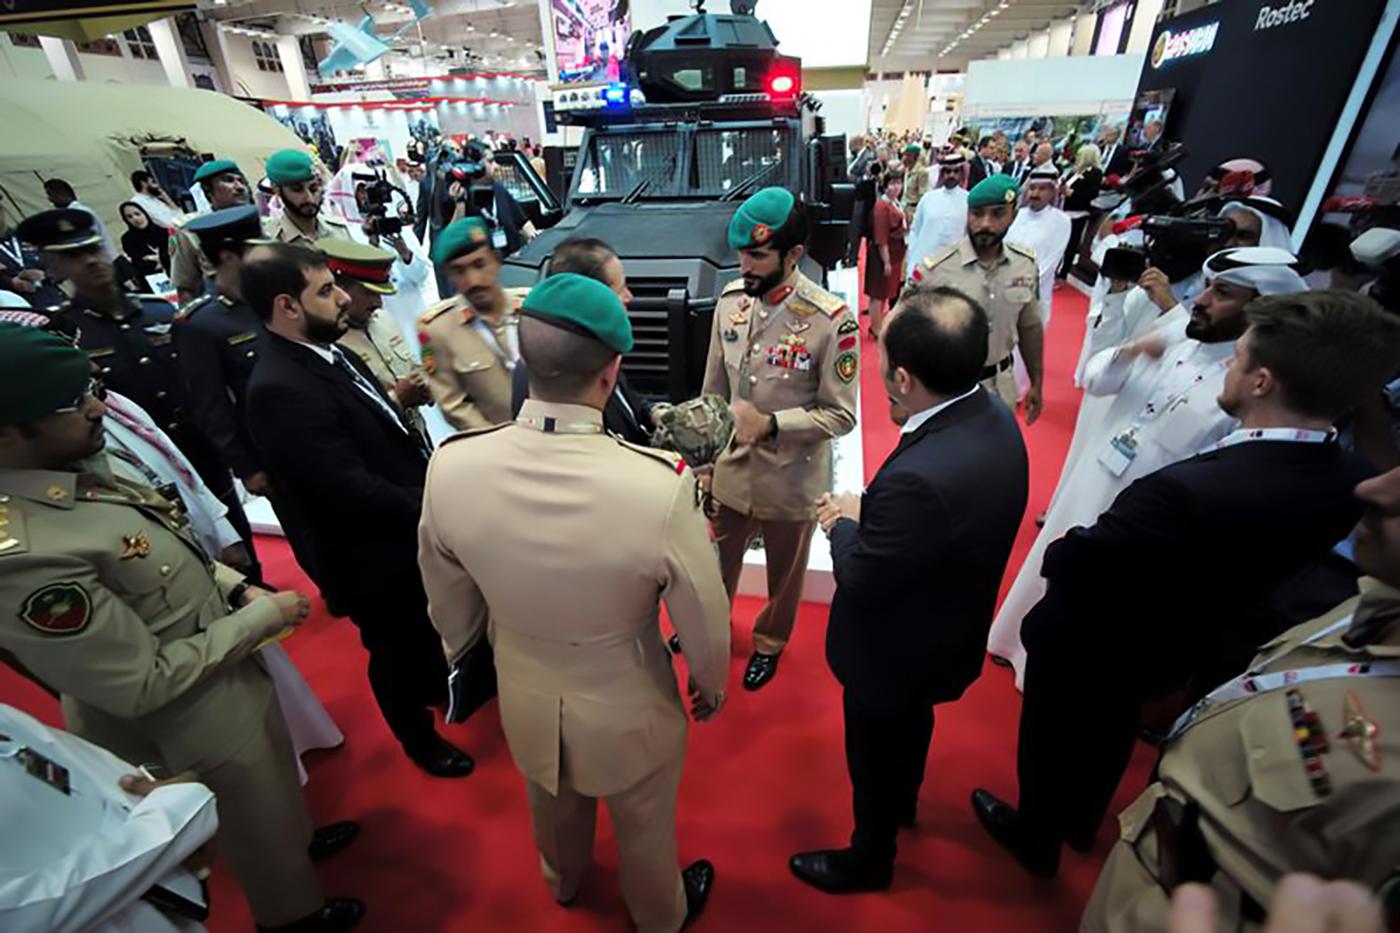 Kepala Protokoler dan perwakilan Raja Bahrain, Brigadir Sheikh Nasser bin Hamad al Khalifa (posisi di tengah) menginspeksi helm antipeluru militer dalam acara pembukaan Pameran dan Konferensi Pertahanan Internasional Bahrain di Bahrain Exhibition Center, 